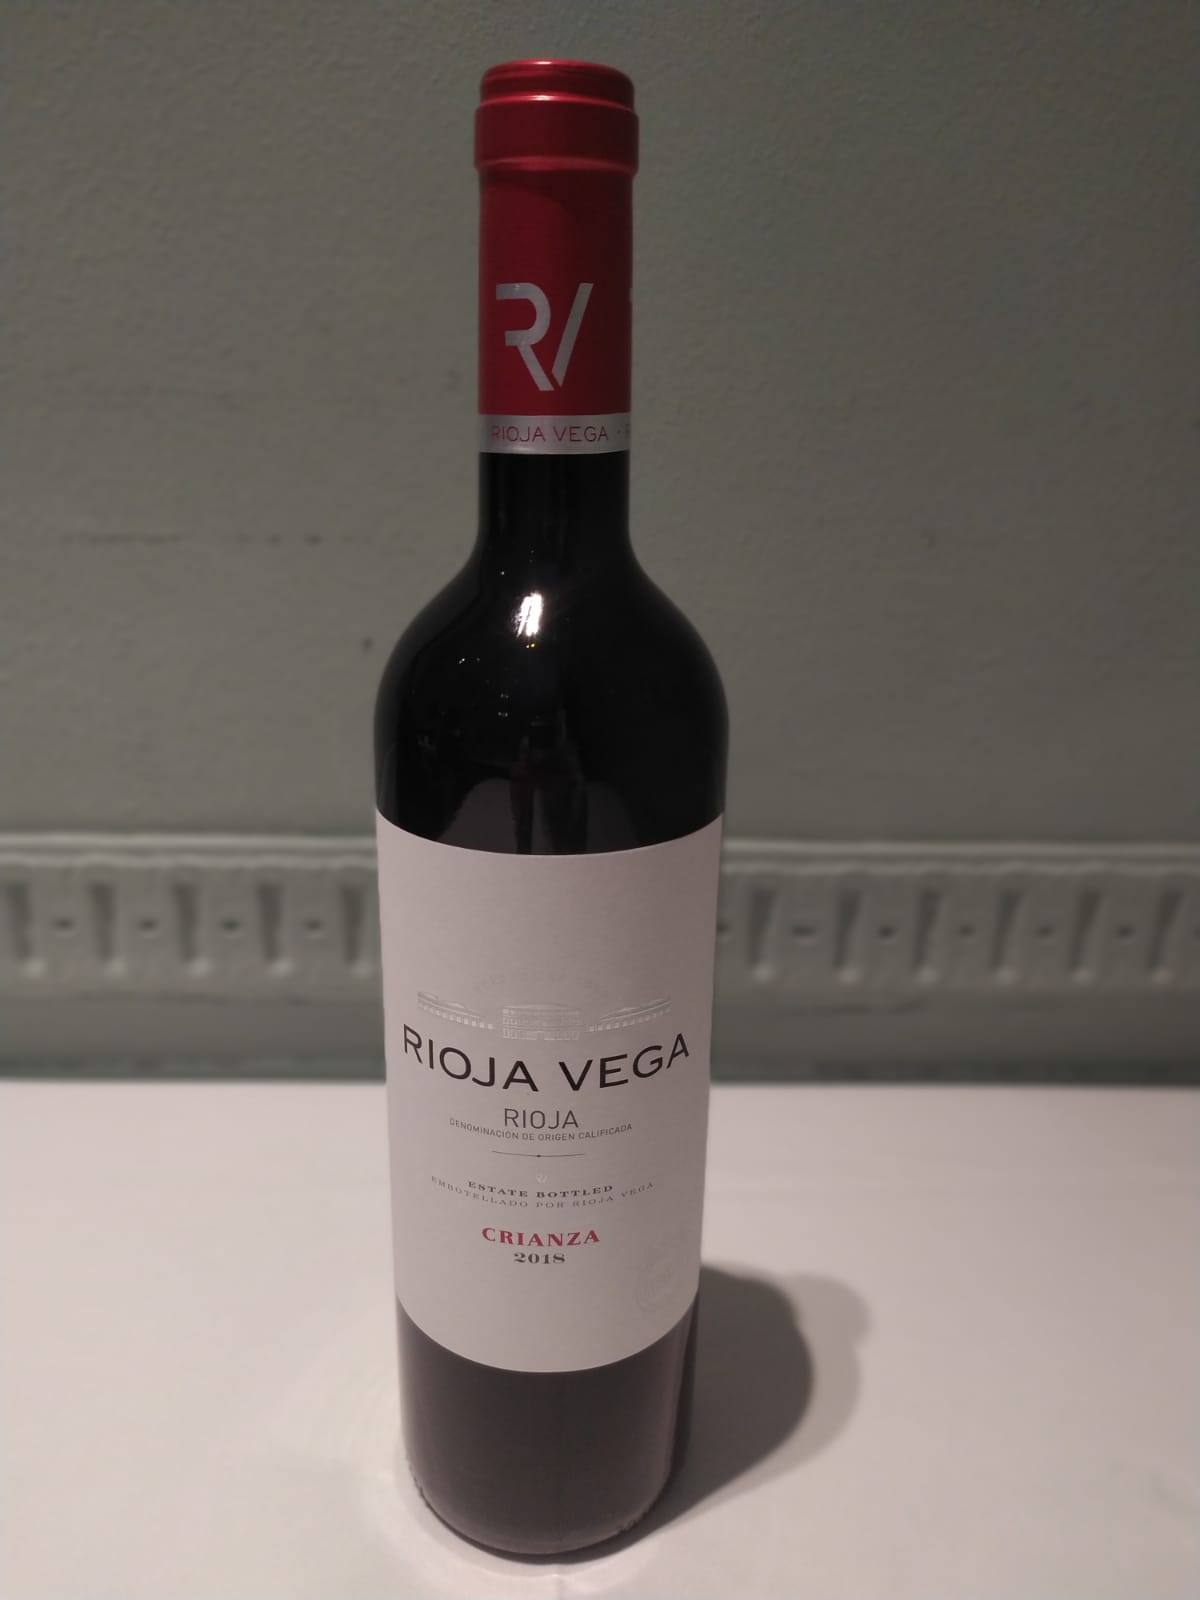 Rioja Vega (Recommandation de la maison)